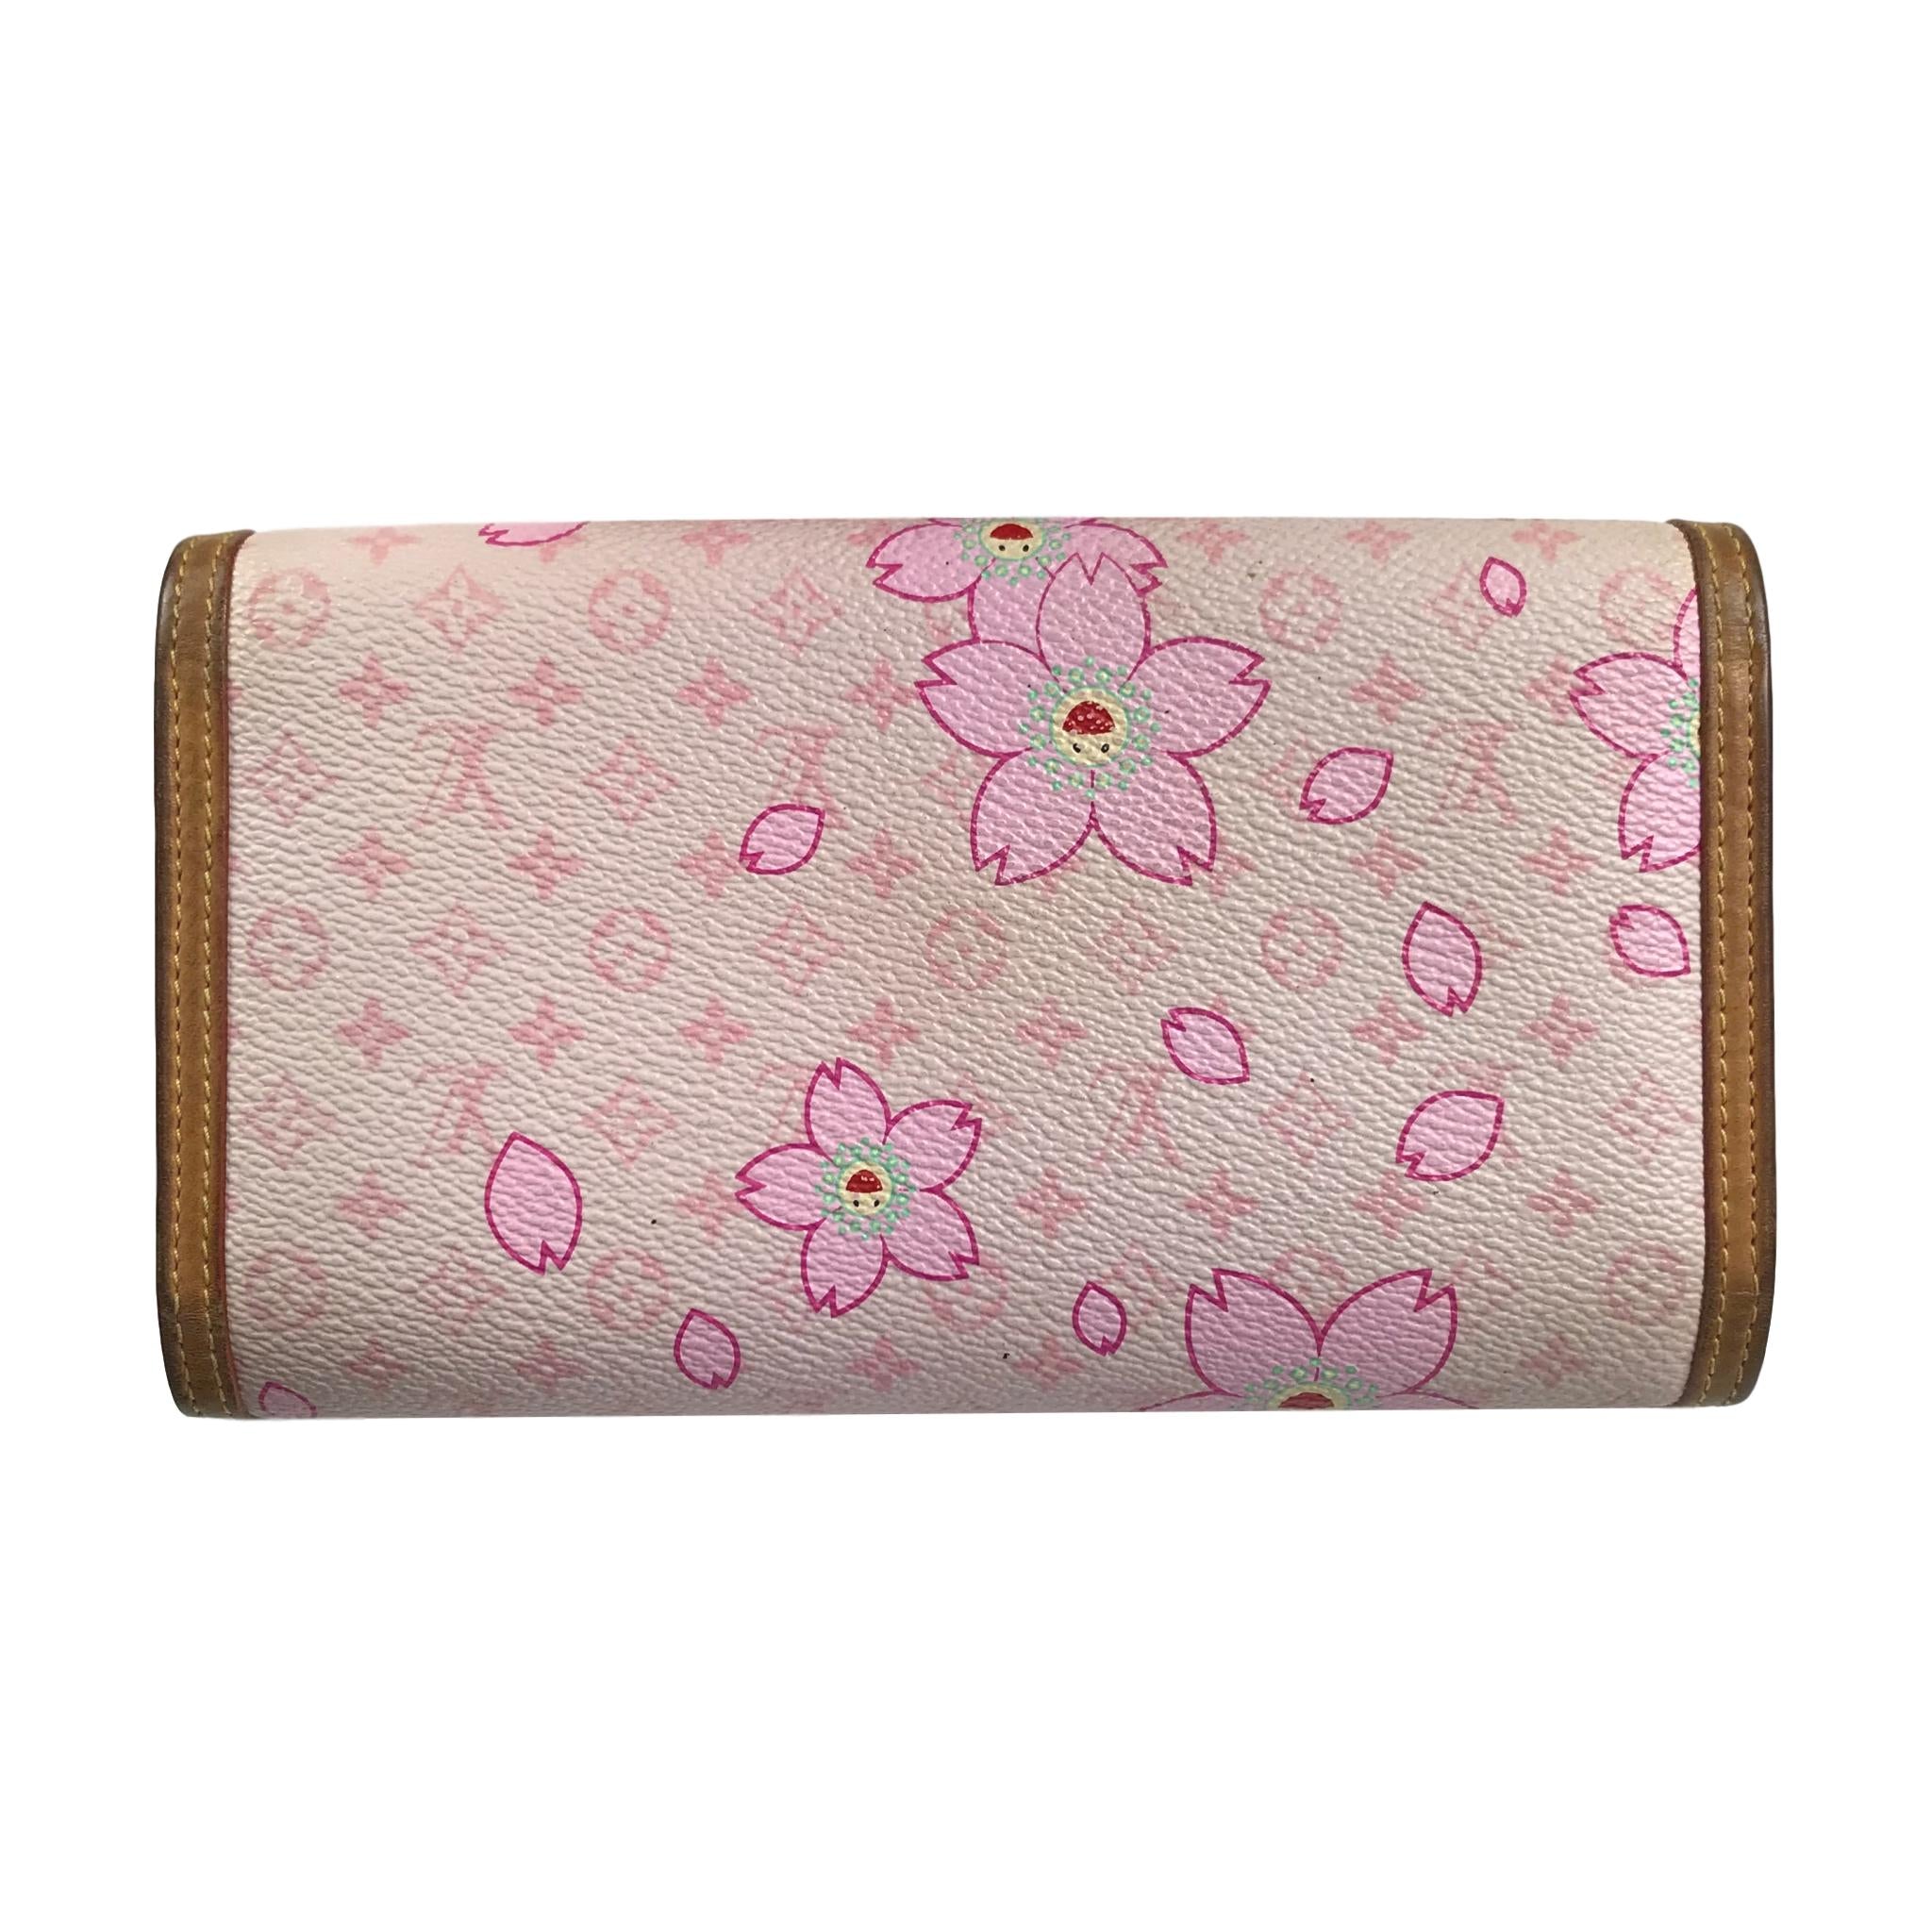 Louis Vuitton x Takashi Murakami Cherry Blossom Monogram Pink